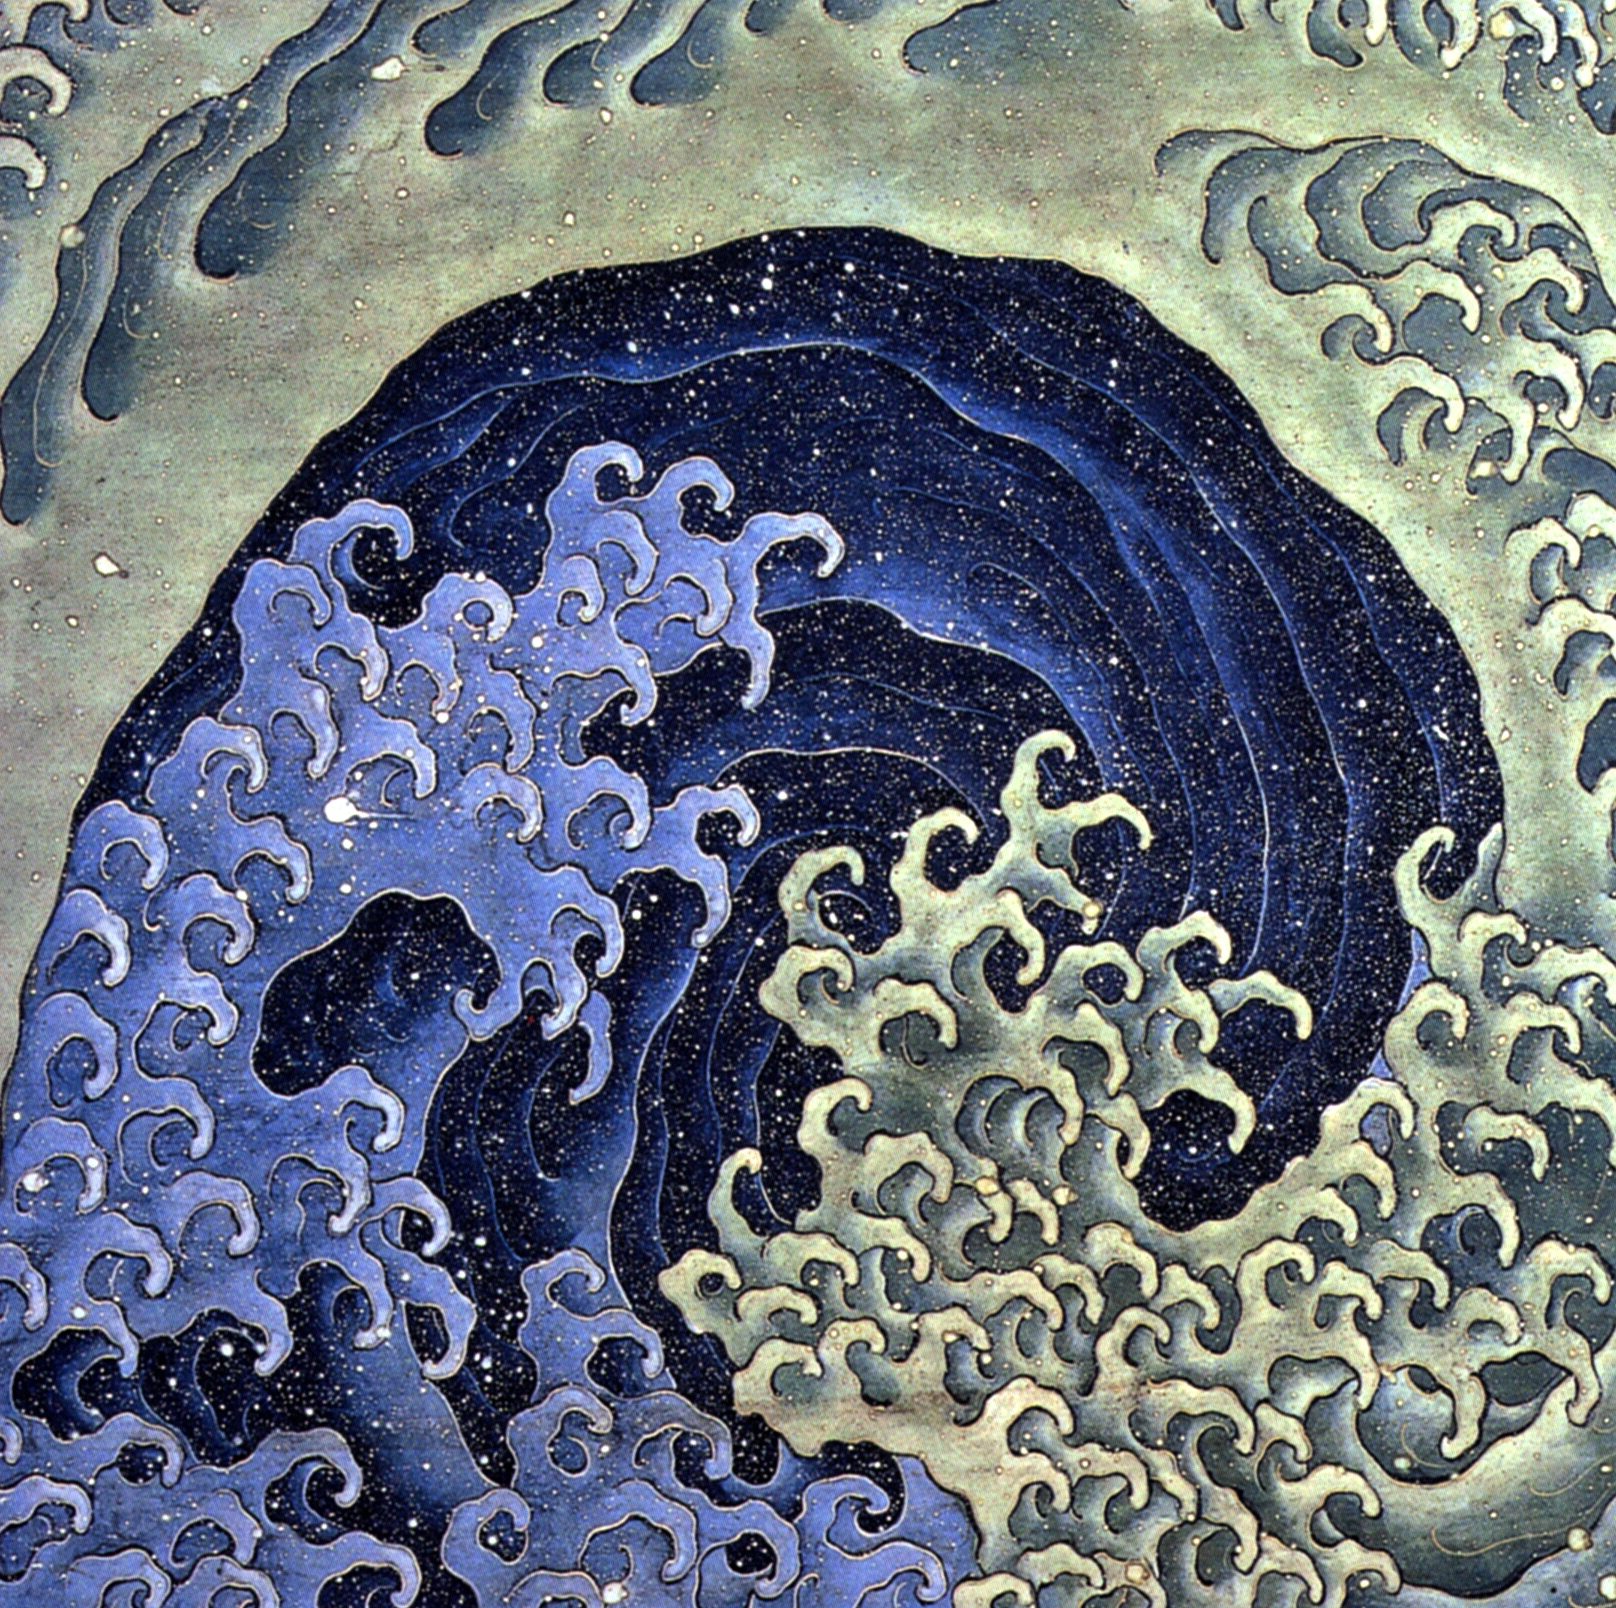 الموجة الأنثوية by Katsushika Hokusai - 1845 م - 118 في 118.5 سم 